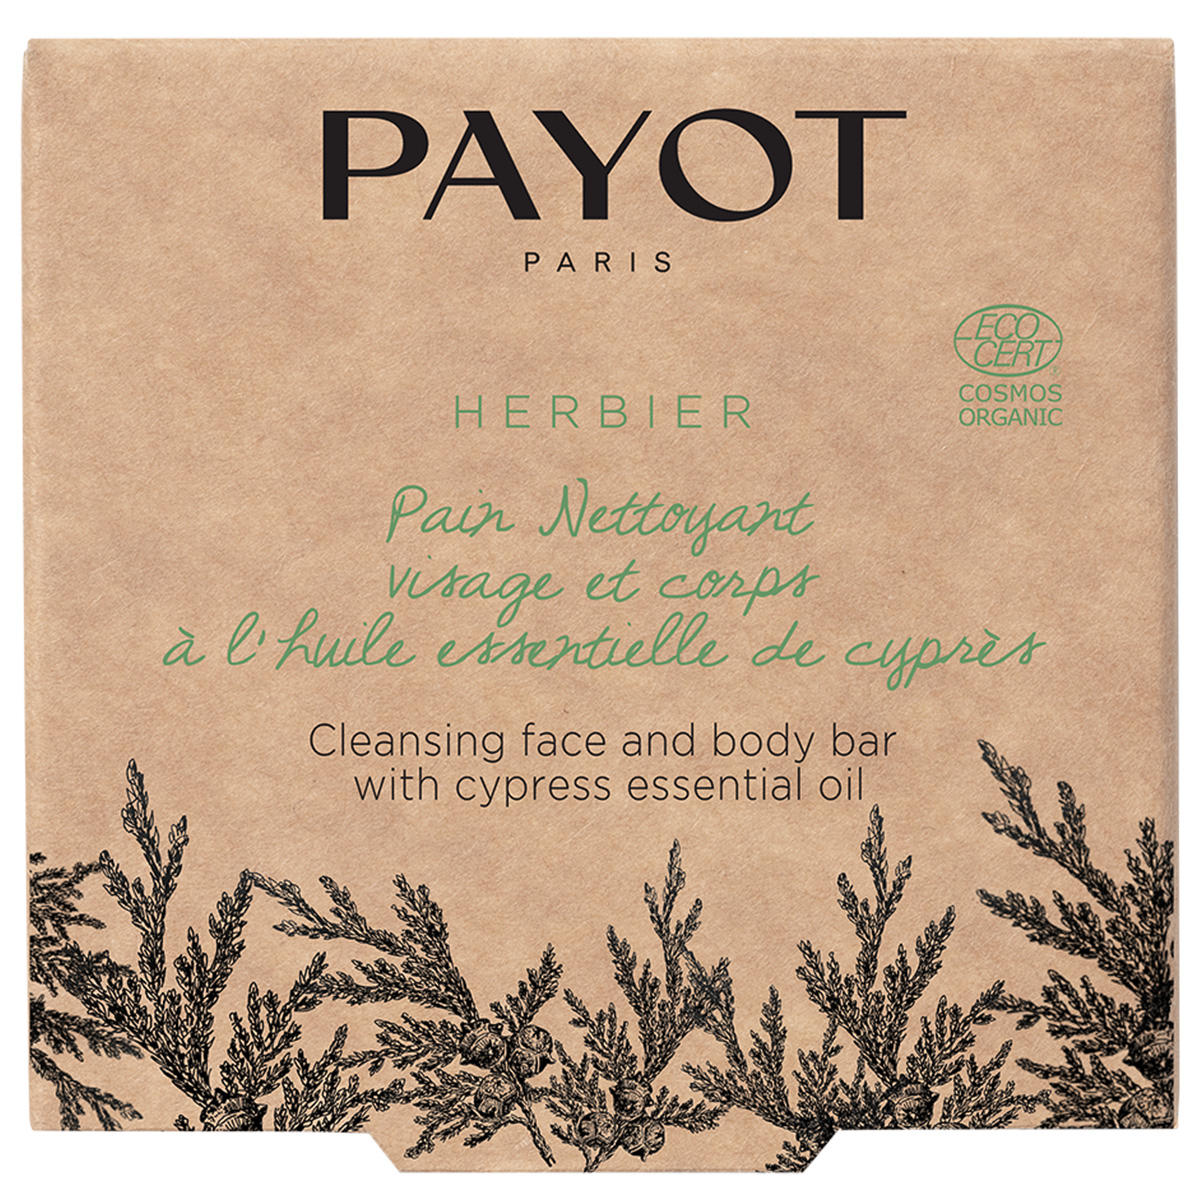 Payot Herbier Pain Nettoyant visage et corps à l'huile essentielle de cyprès 85 g - 2